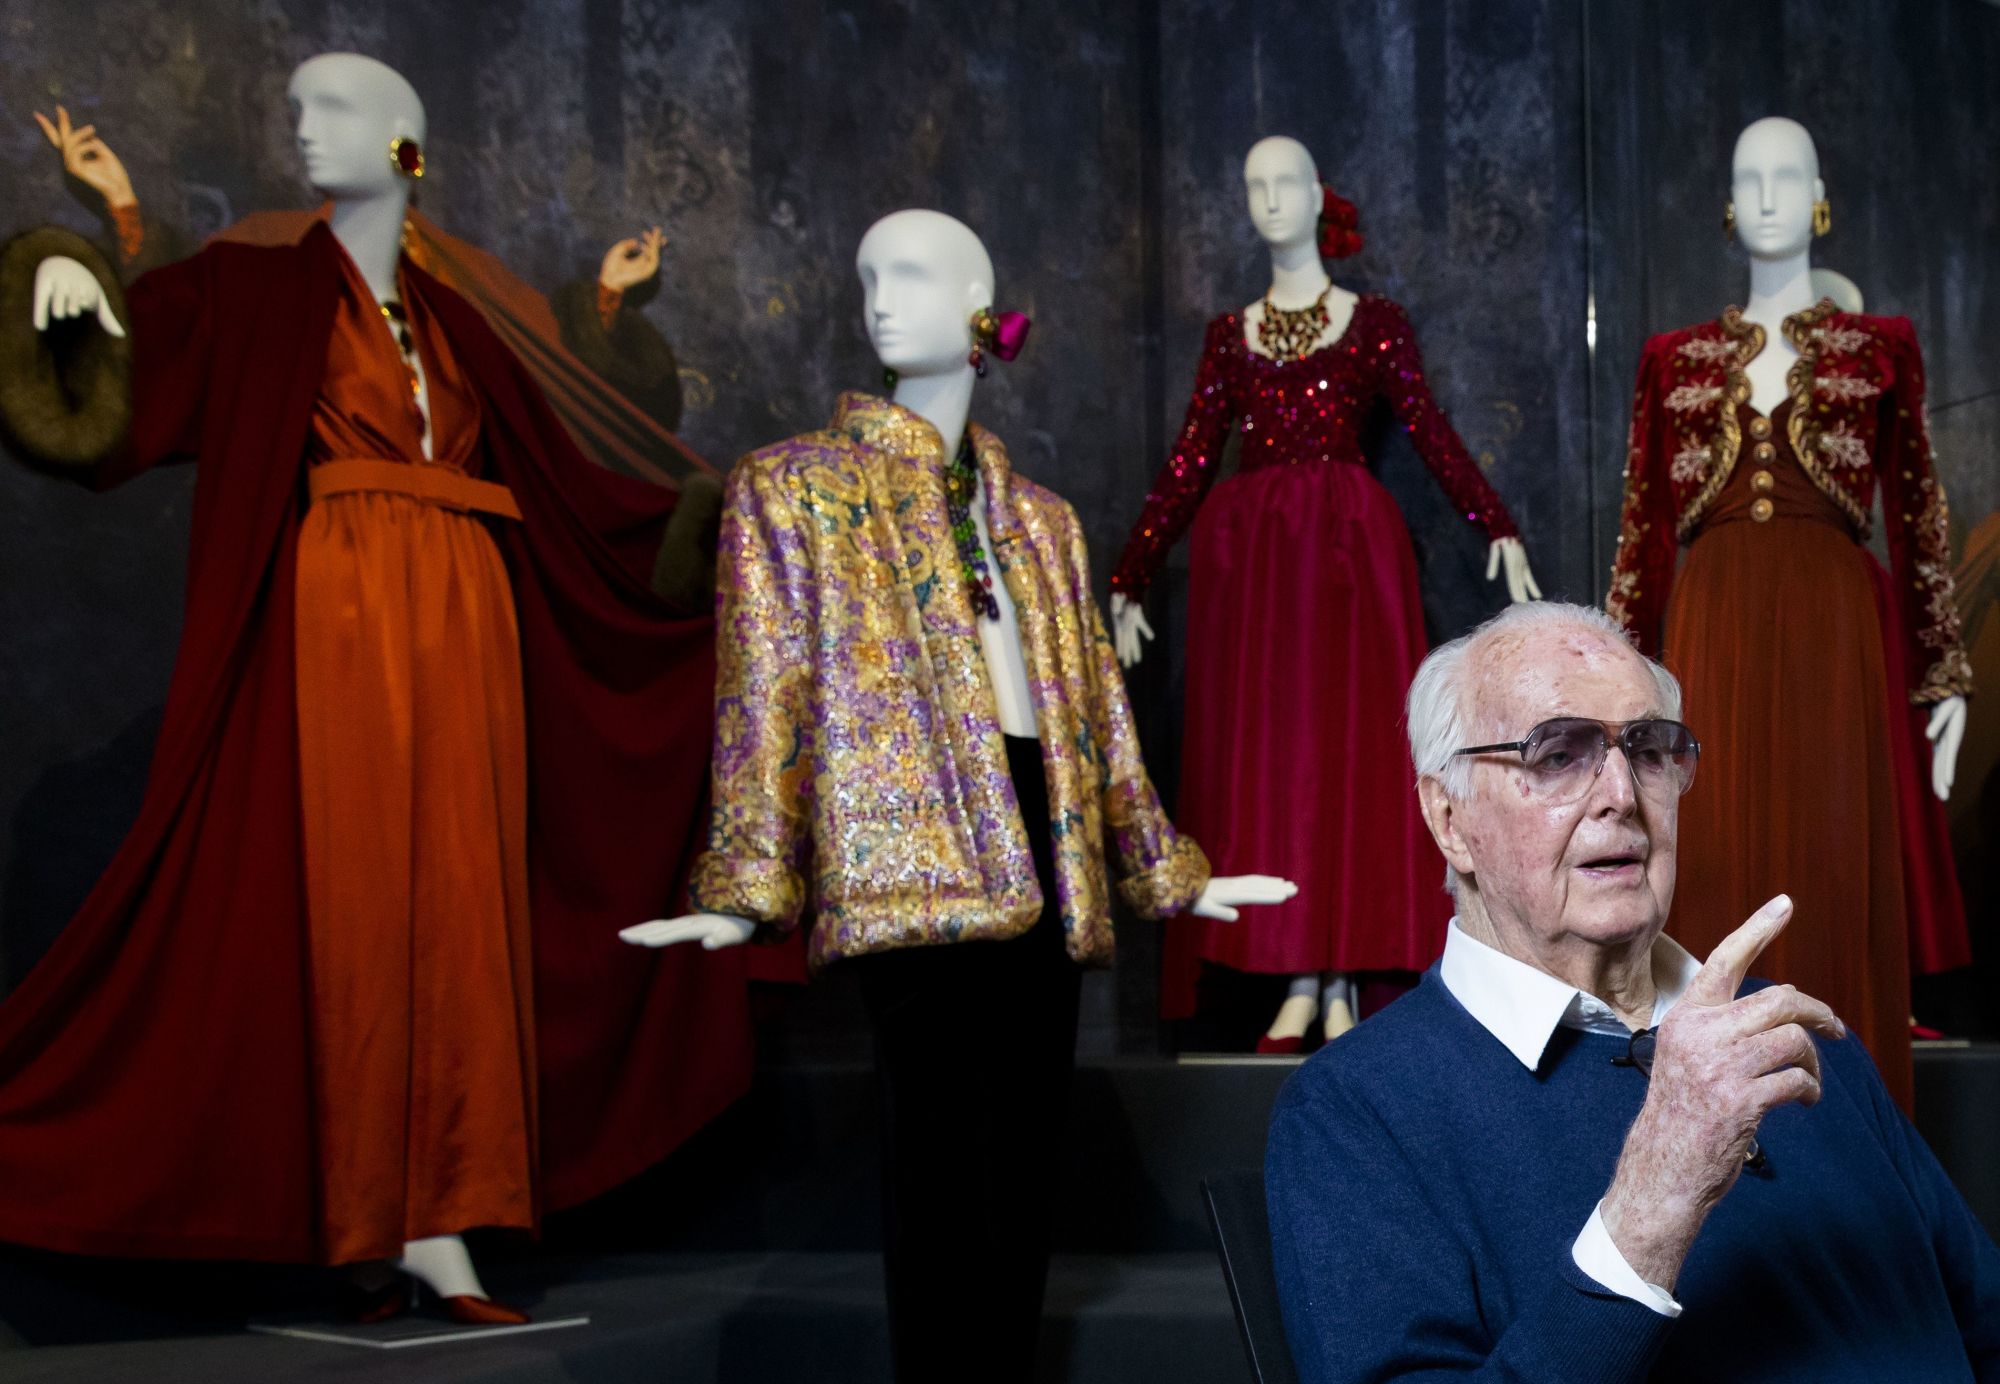 Hubert de Givenchy, famed fashion designer, dies